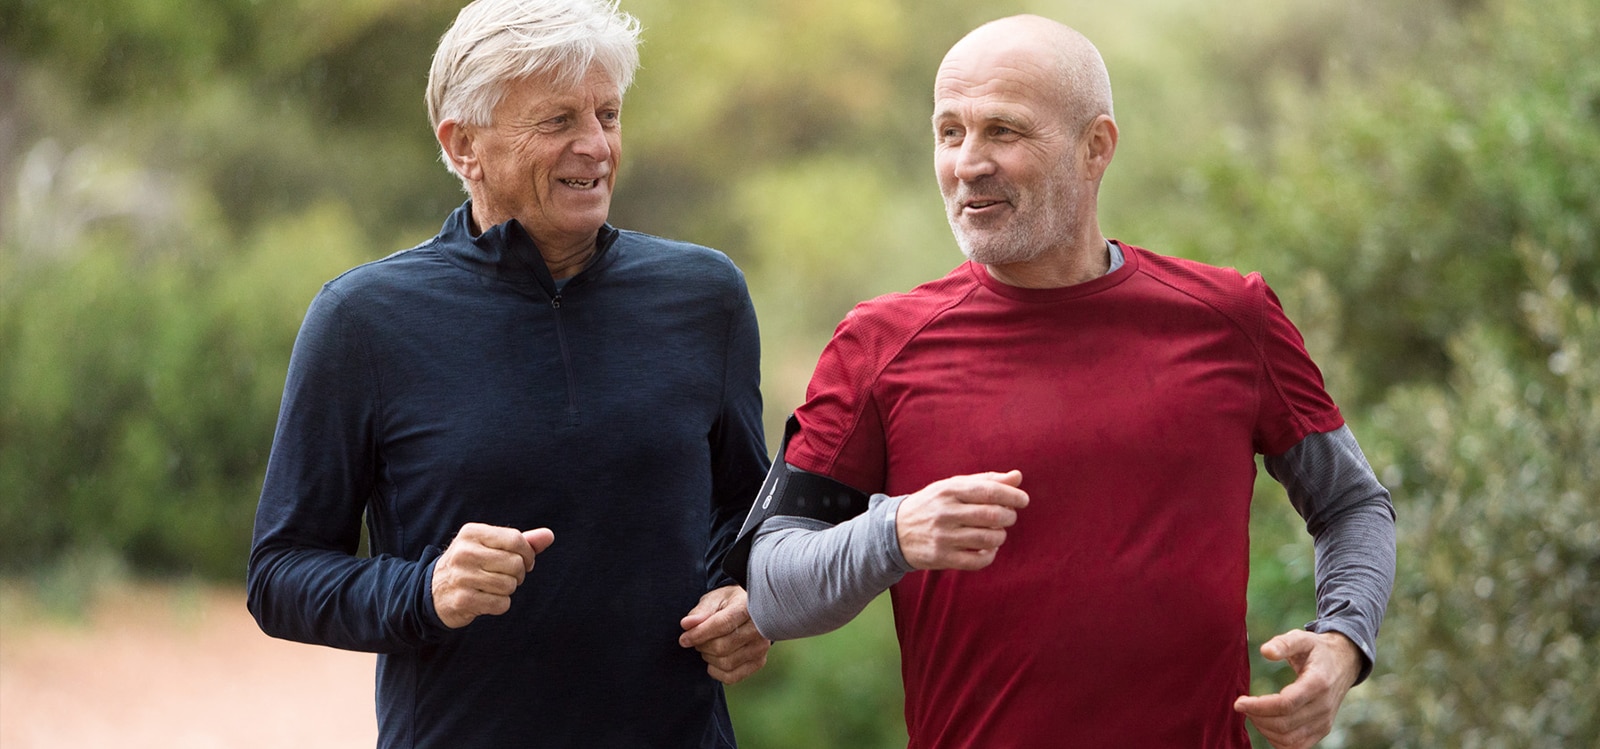 Doi bărbați cu vârste cuprinse între 50 și 60 de ani care aleargă